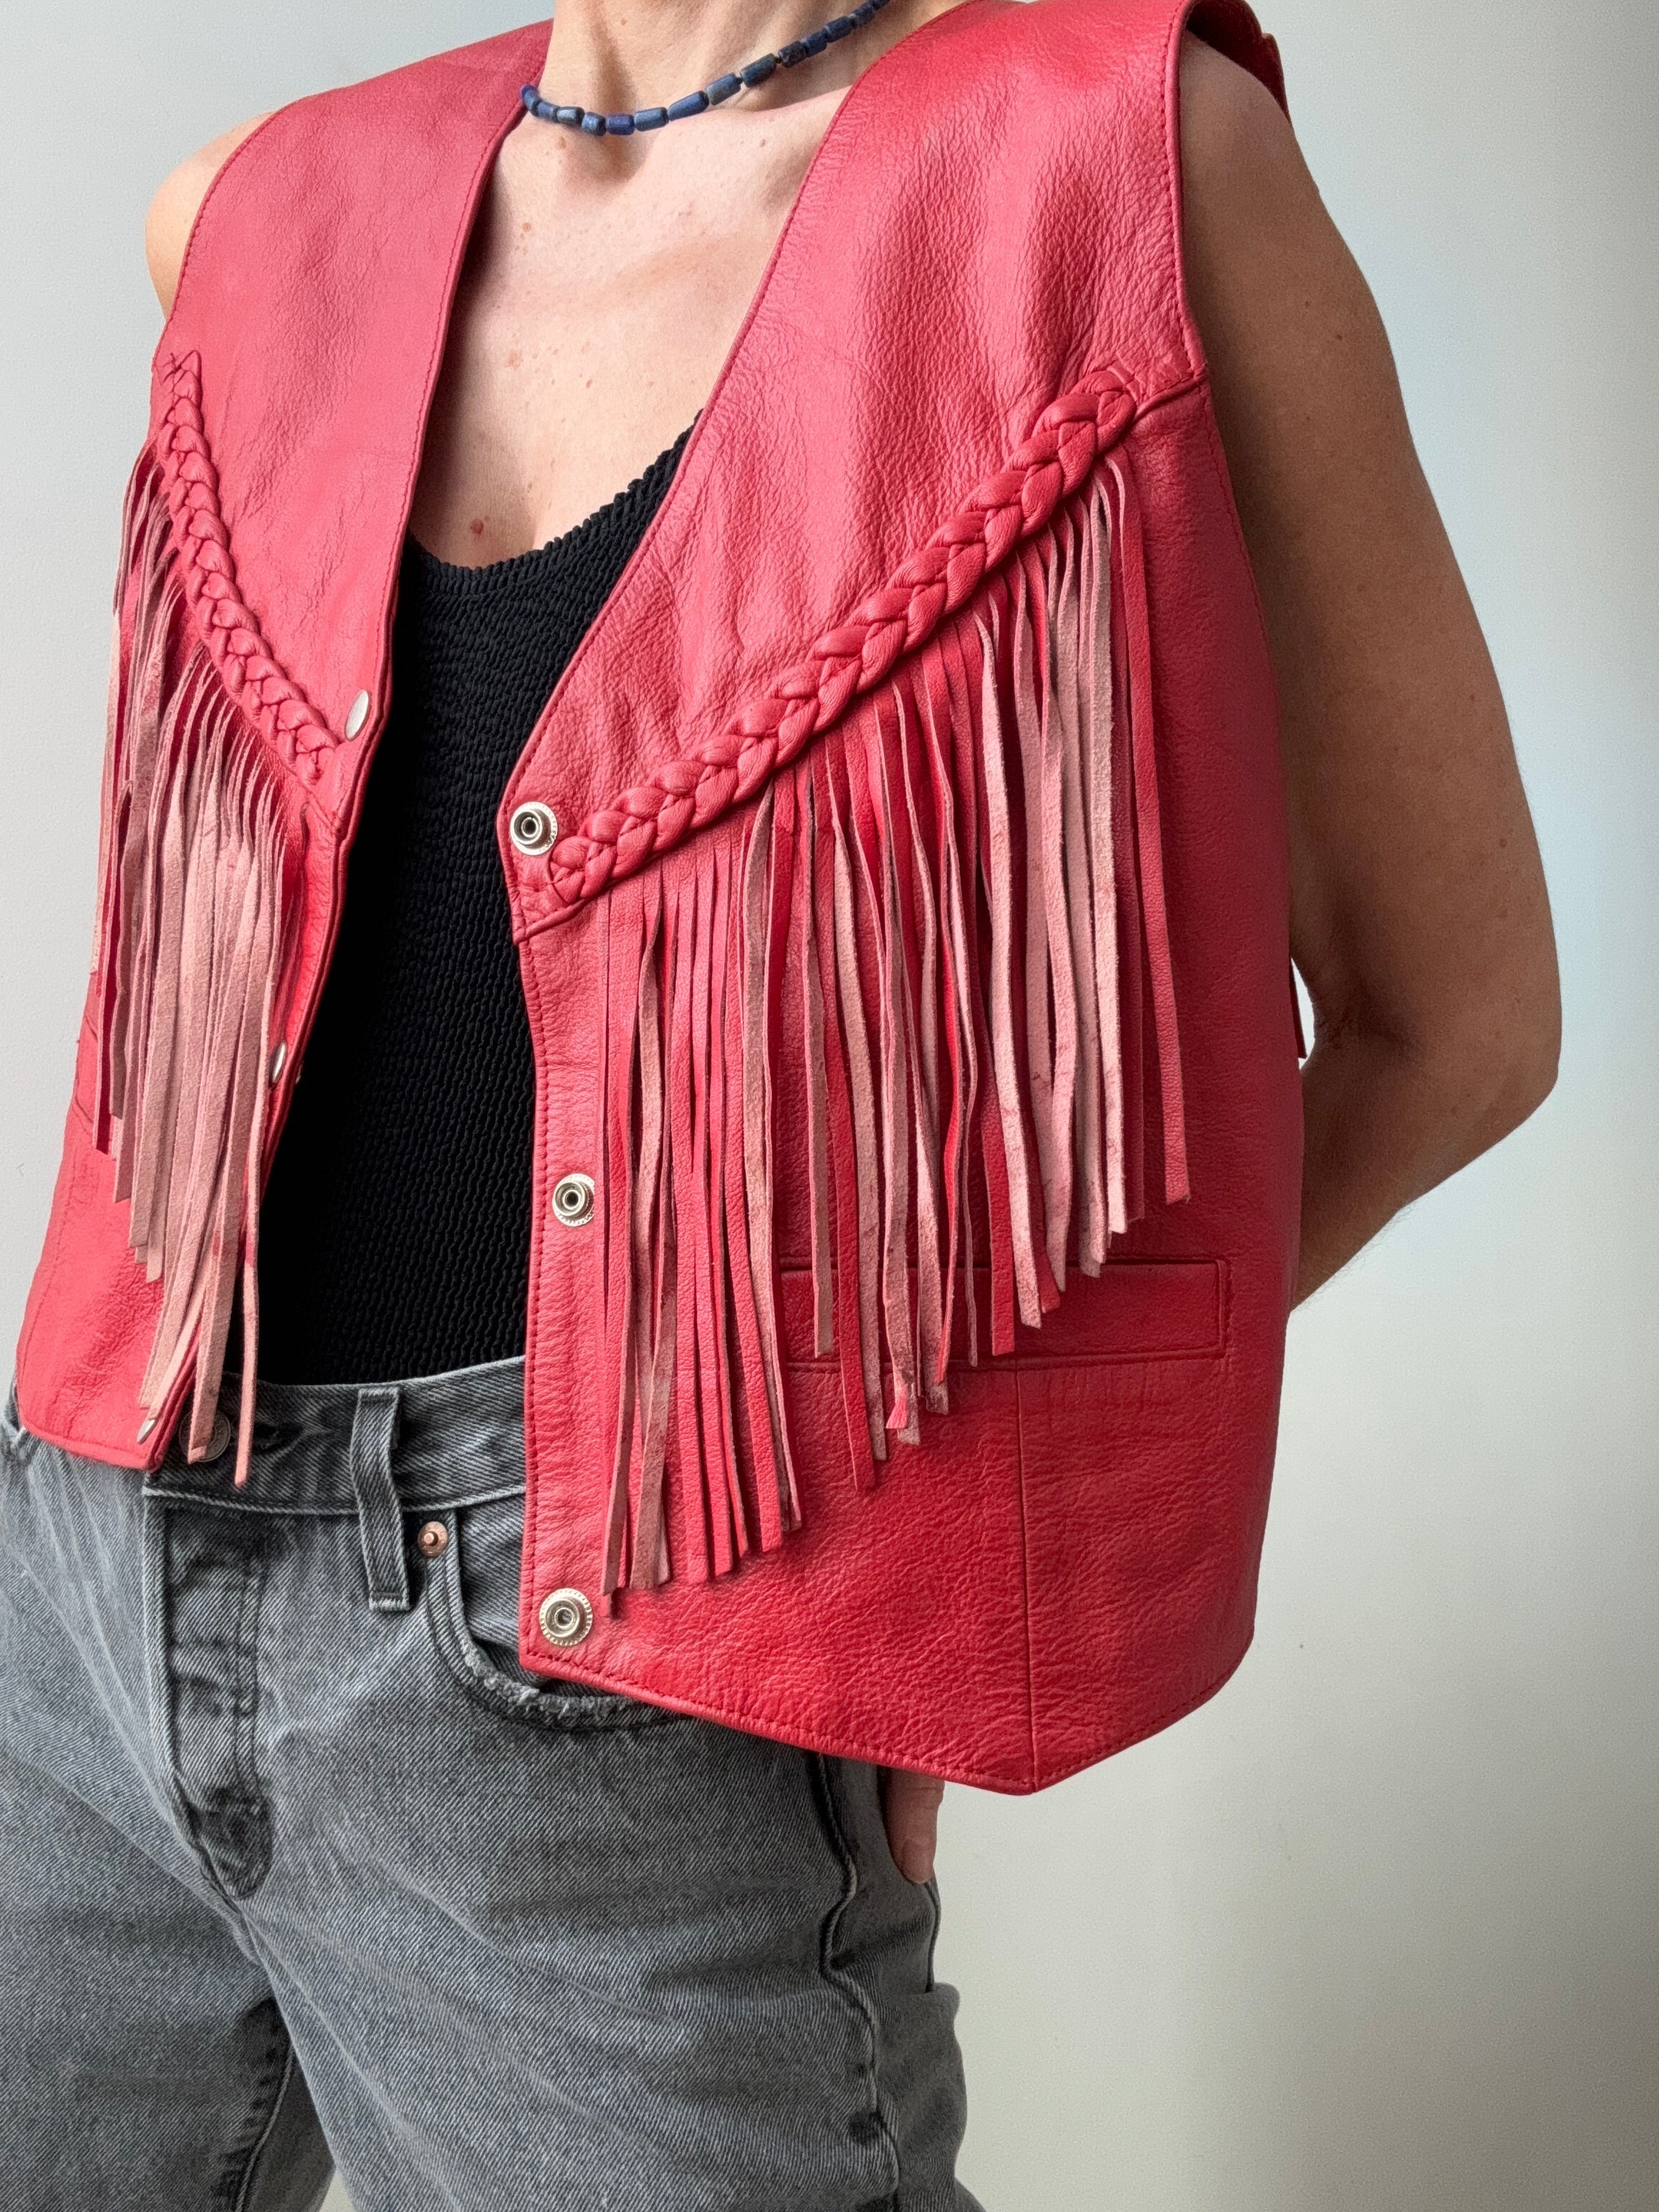 Future Nomads Vests Medium Vintage Tassel Red Leather Vest